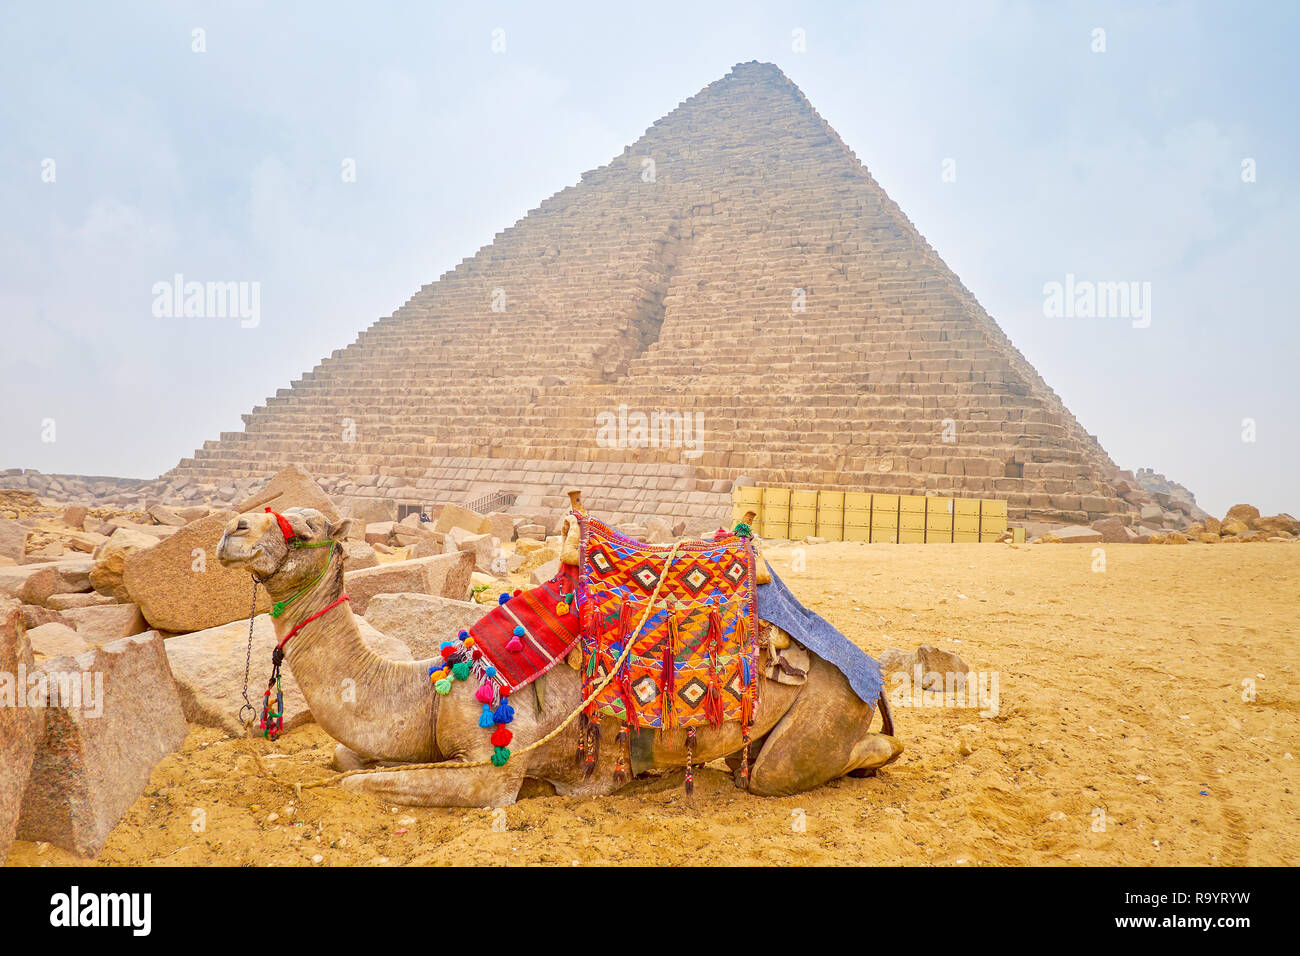 Le chameau est assis sur le sable à côté de l'ancienne pyramide de Gizeh, Nécropole Menkaourê au Caire, Égypte. Banque D'Images